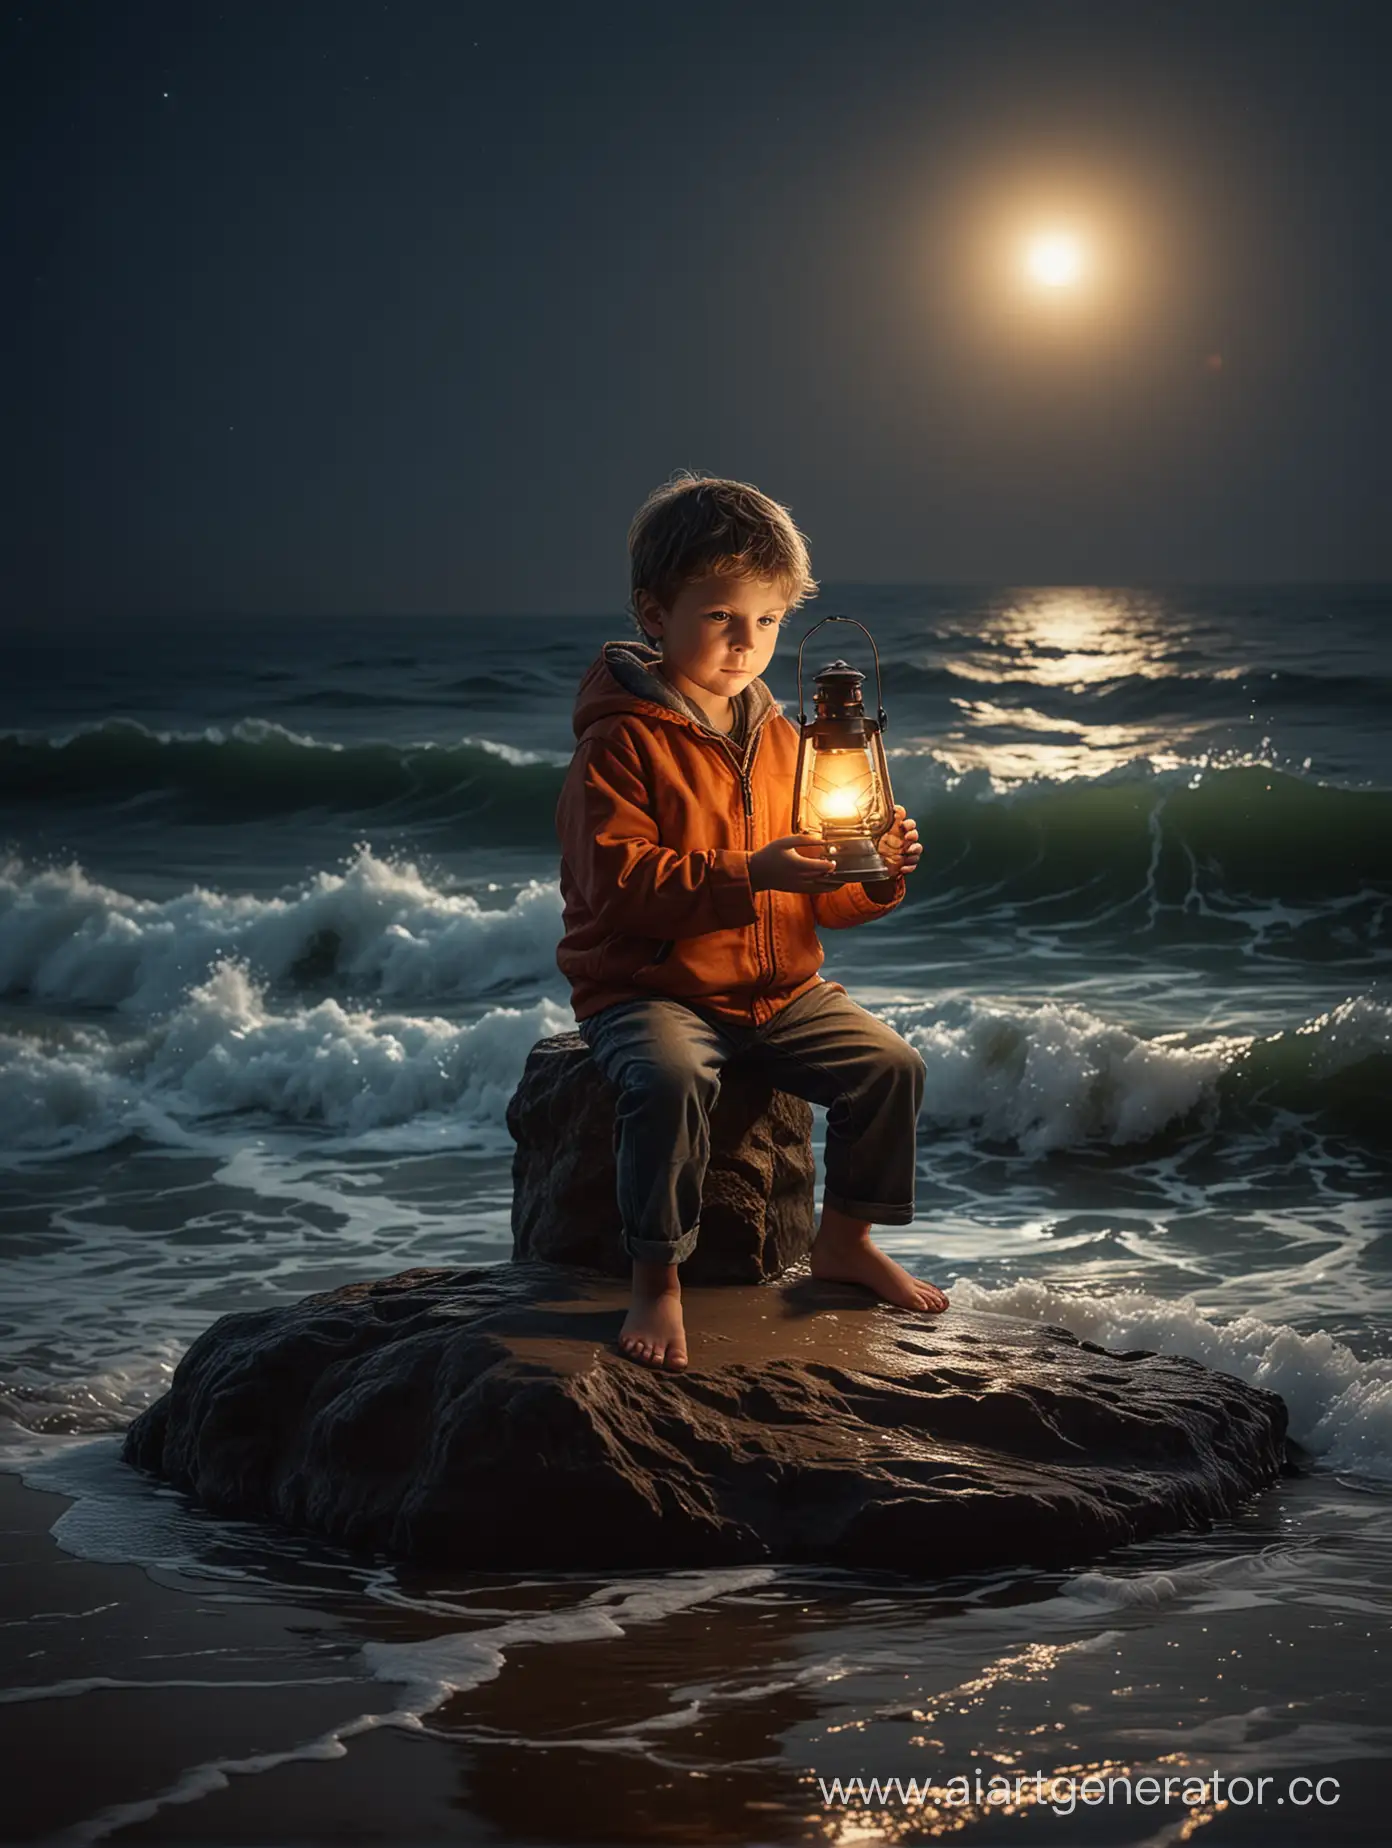 Маленький мальчик сидит на берегу моря на камне ночью, мальчик держит в руках яркий фонарь, на фоне волны моря,  очень реалистично